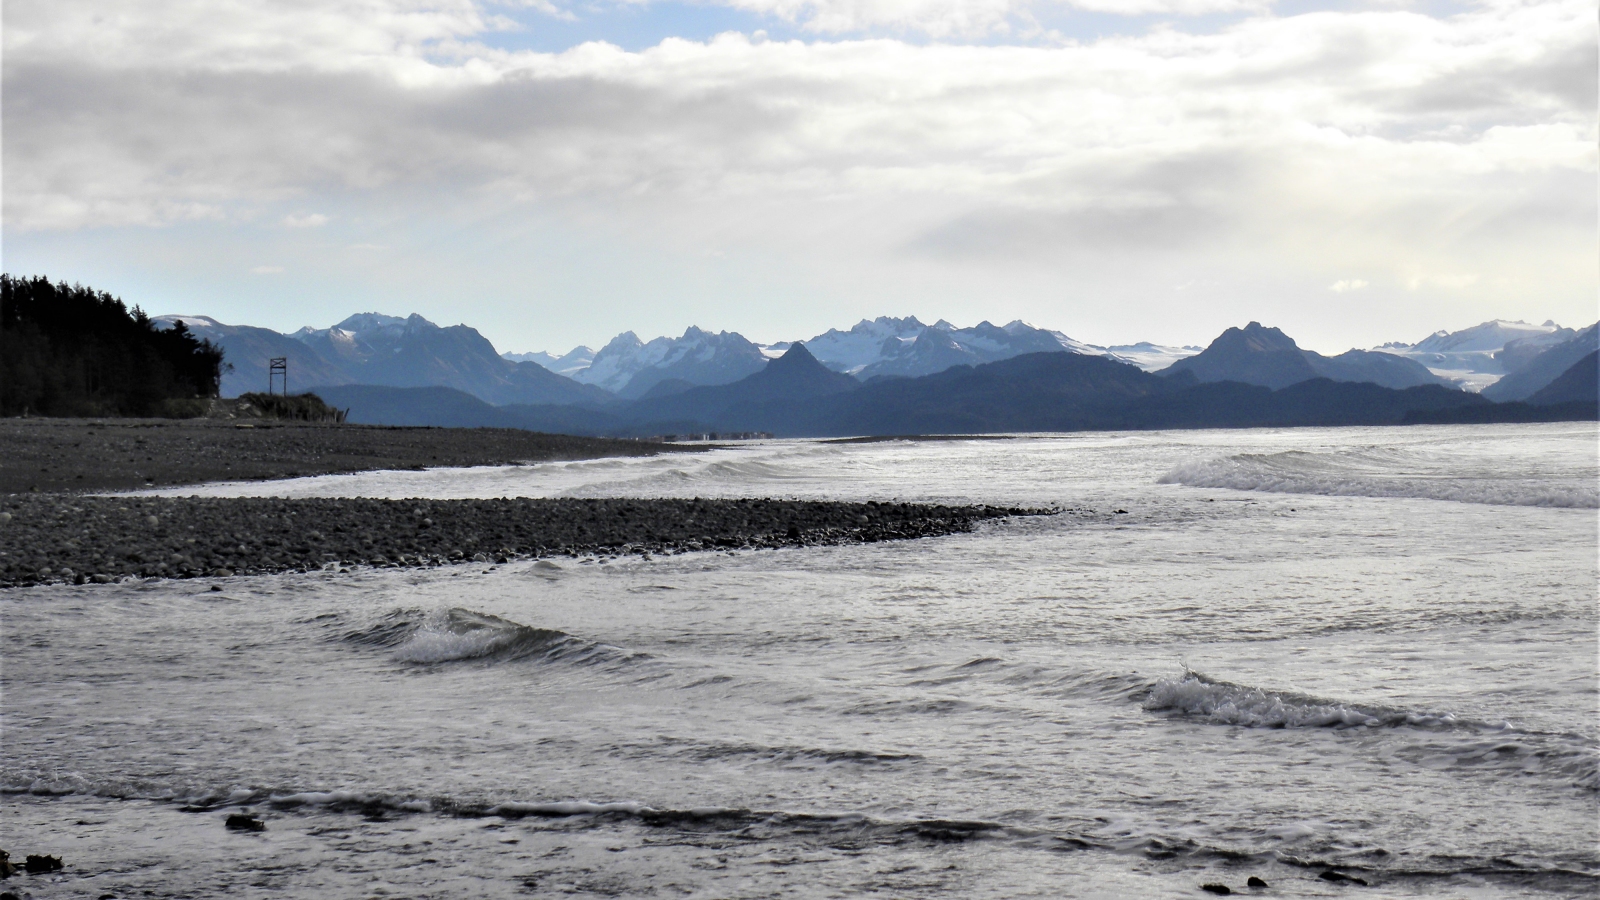 Surowe, dzikie i piękne krajobrazy wybrzeża Pacyfiku na Alasce. Fot. Joanna i Gabriela.